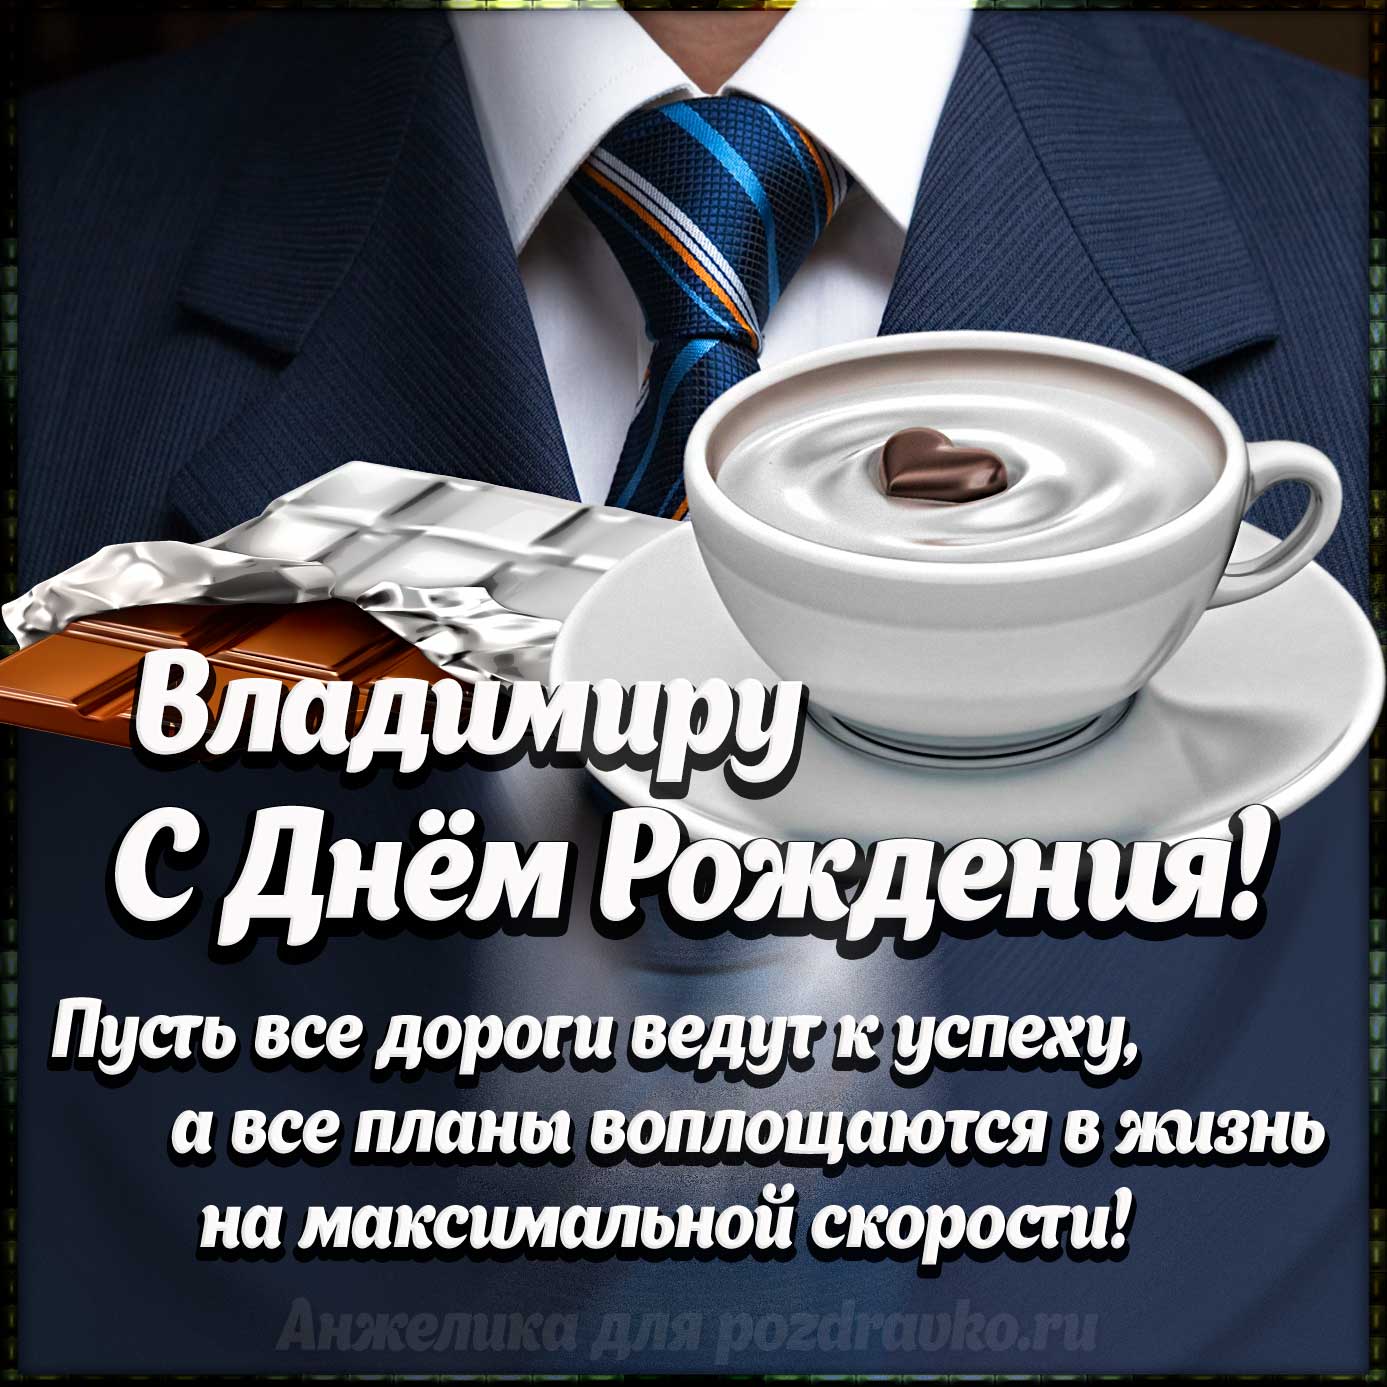 Открытка - Владимиру с Днем Рождения с галстуком, кофе и пожеланием. Скачать бесплатно или отправить картинку.